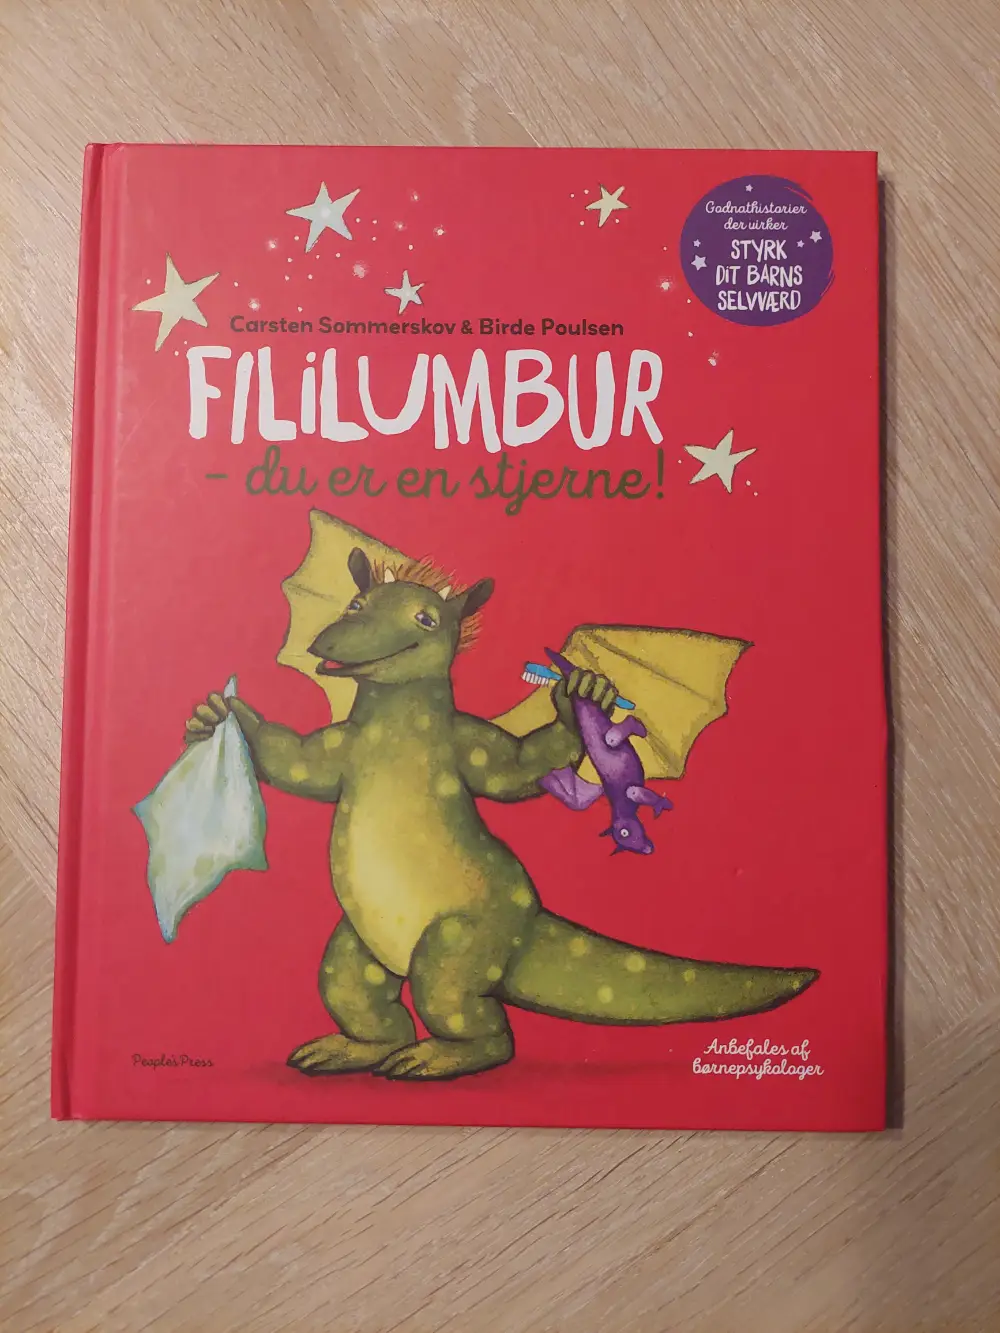 People's Press Bog Filumbur du er en stjerne